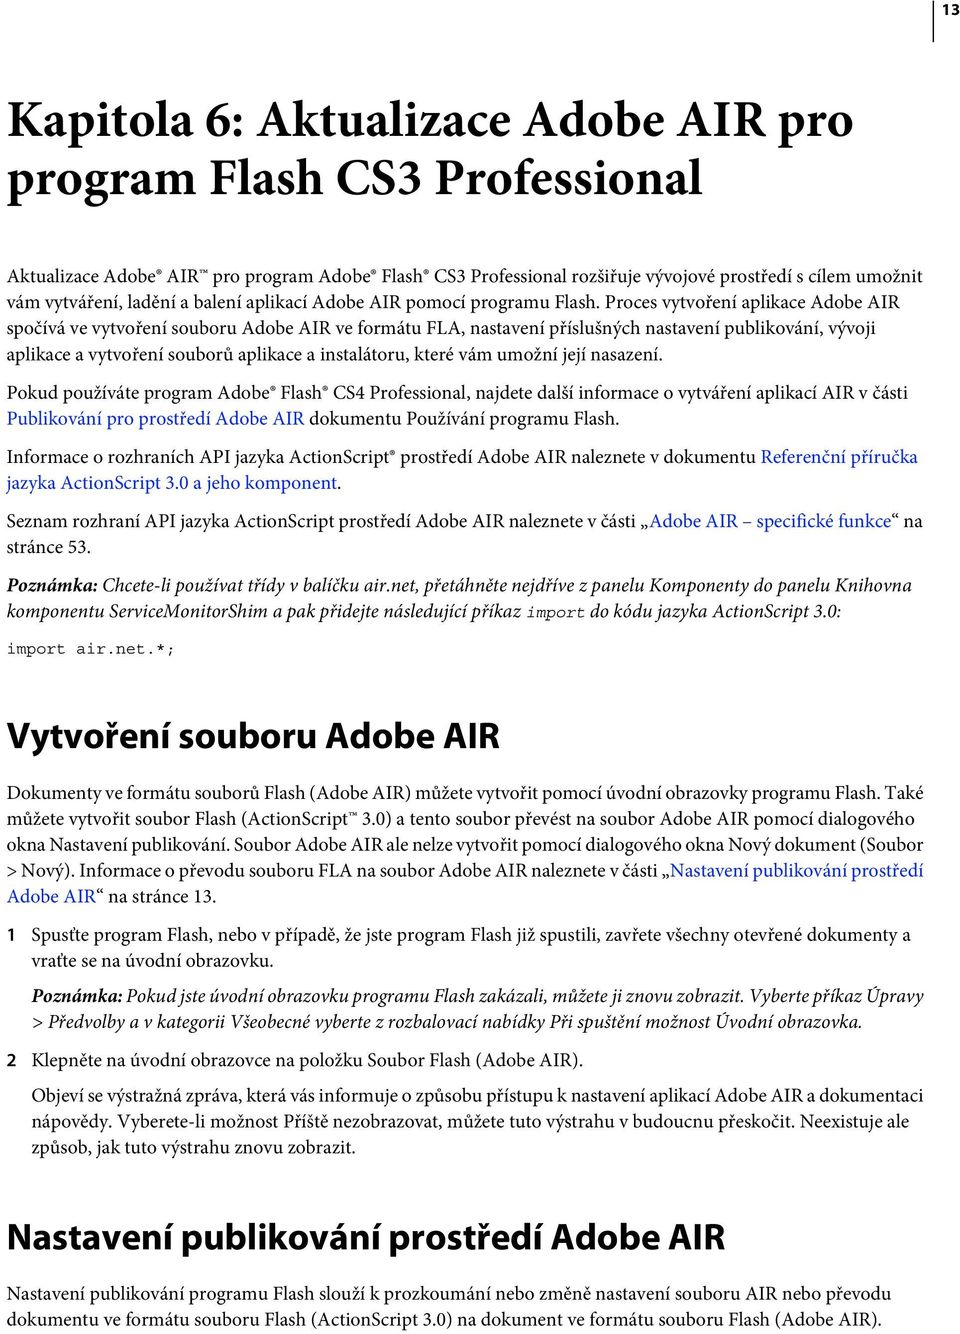 Proces vytvoření aplikace Adobe AIR spočívá ve vytvoření souboru Adobe AIR ve formátu FLA, nastavení příslušných nastavení publikování, vývoji aplikace a vytvoření souborů aplikace a instalátoru,